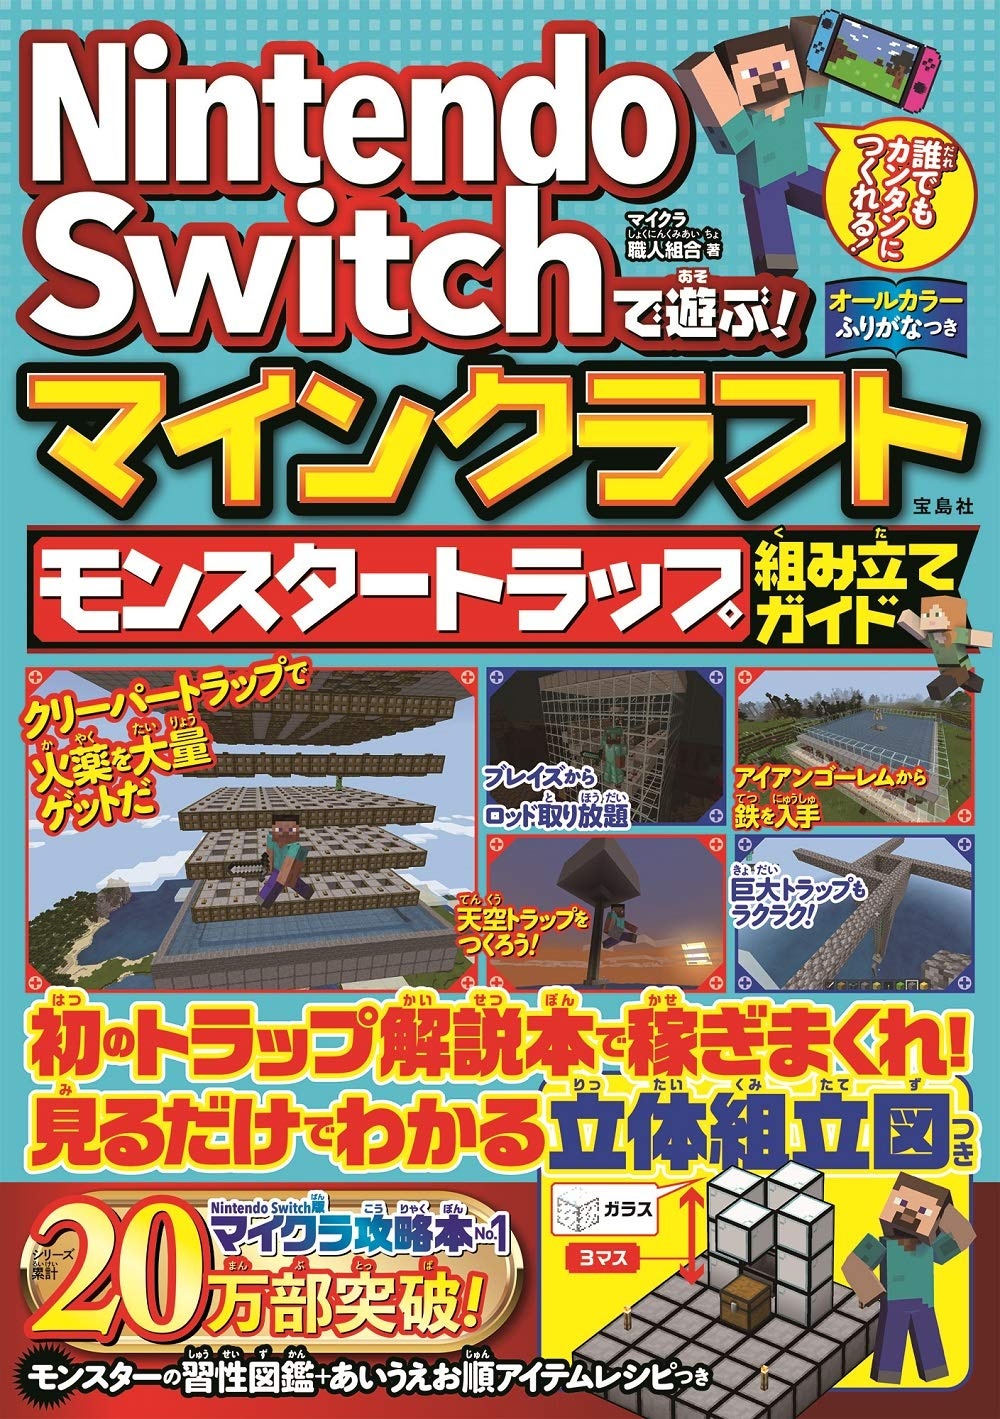 Nintendo Switchで遊ぶ マインクラフト モンスタートラップ組み立てガイド マイクラ職人組合のゲーム攻略本 Tsutaya ツタヤ